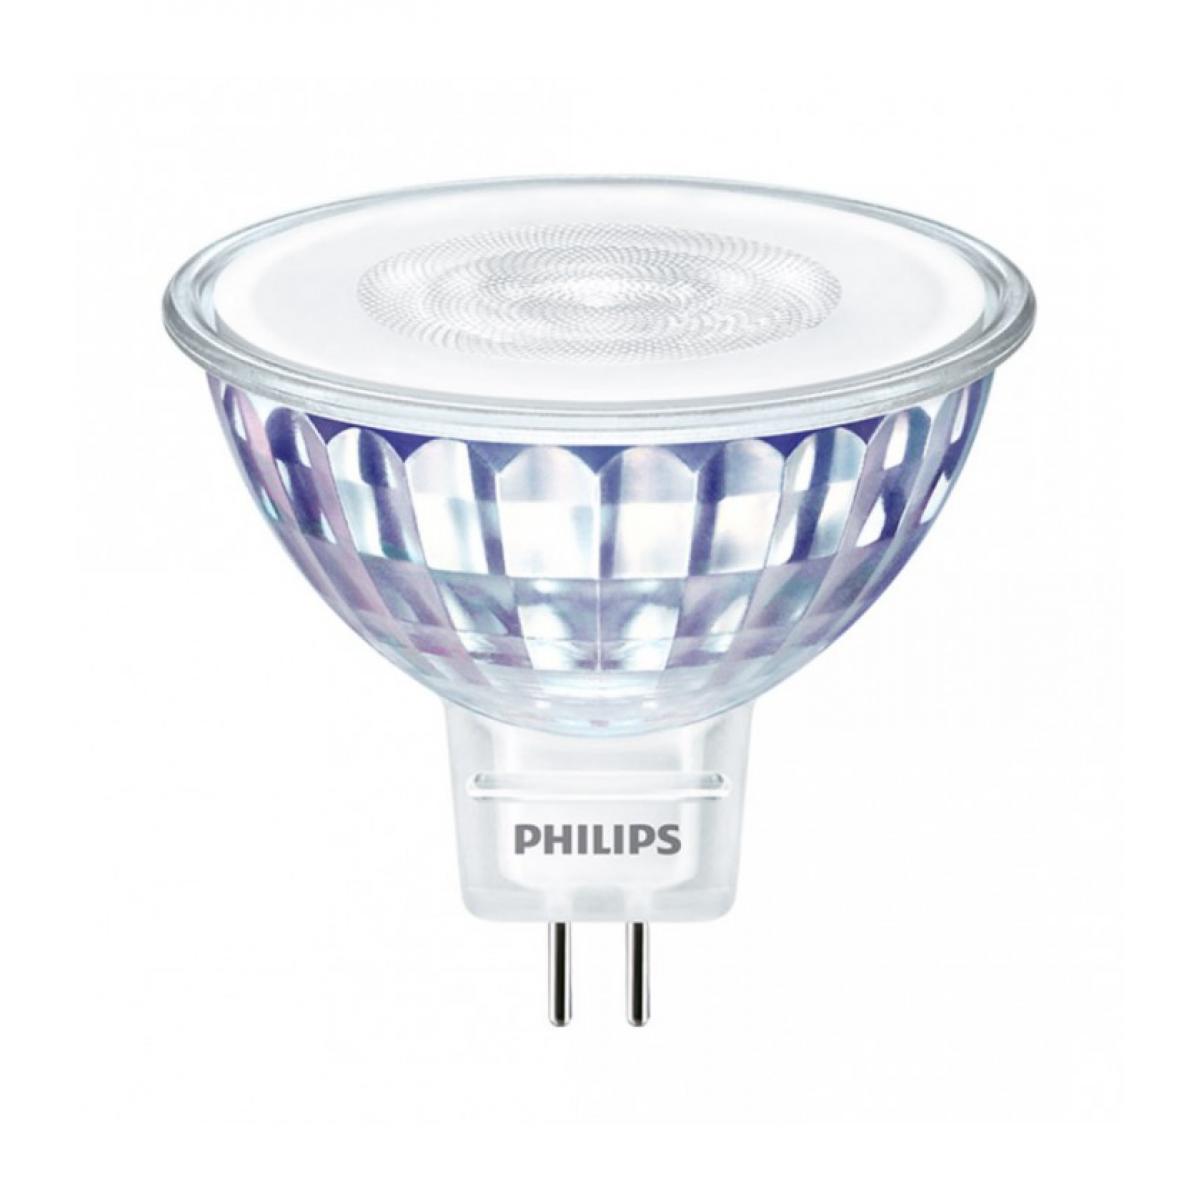 Philips - Ampoule LED MR16 Philips - MASTER LED SPOT VLE D 7-50W MR16 827 36D - Ampoules LED